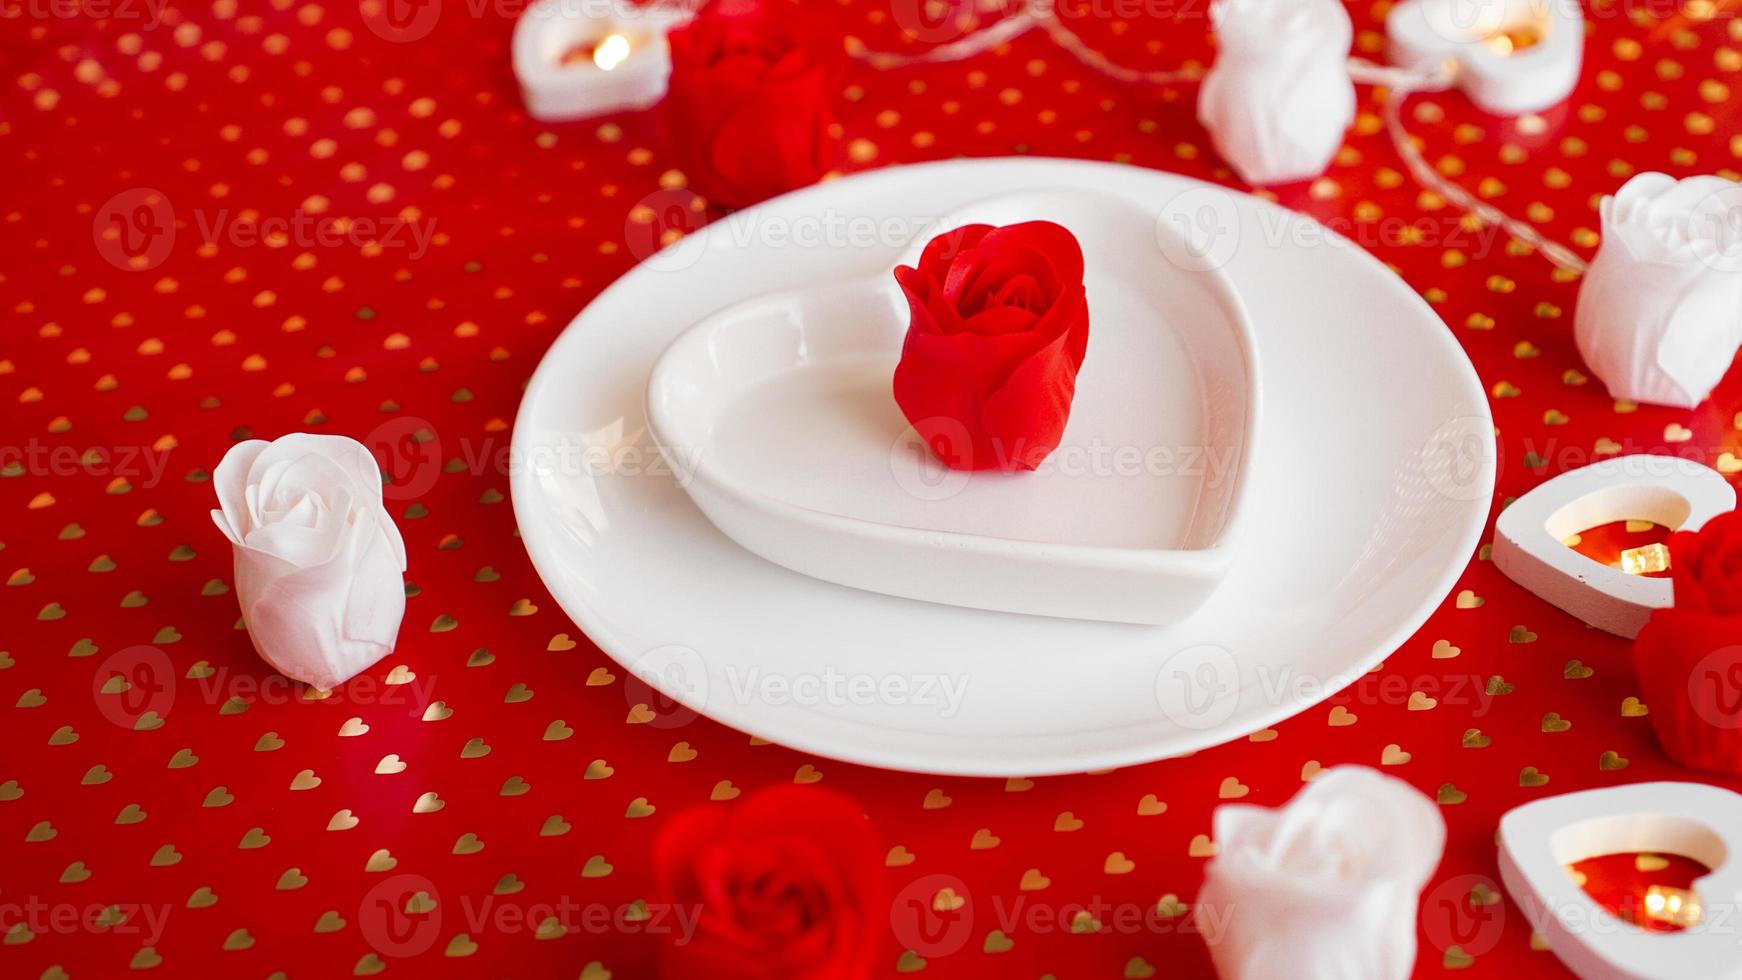 couvert en rouge et blanc - pour la Saint-Valentin ou autre événement photo